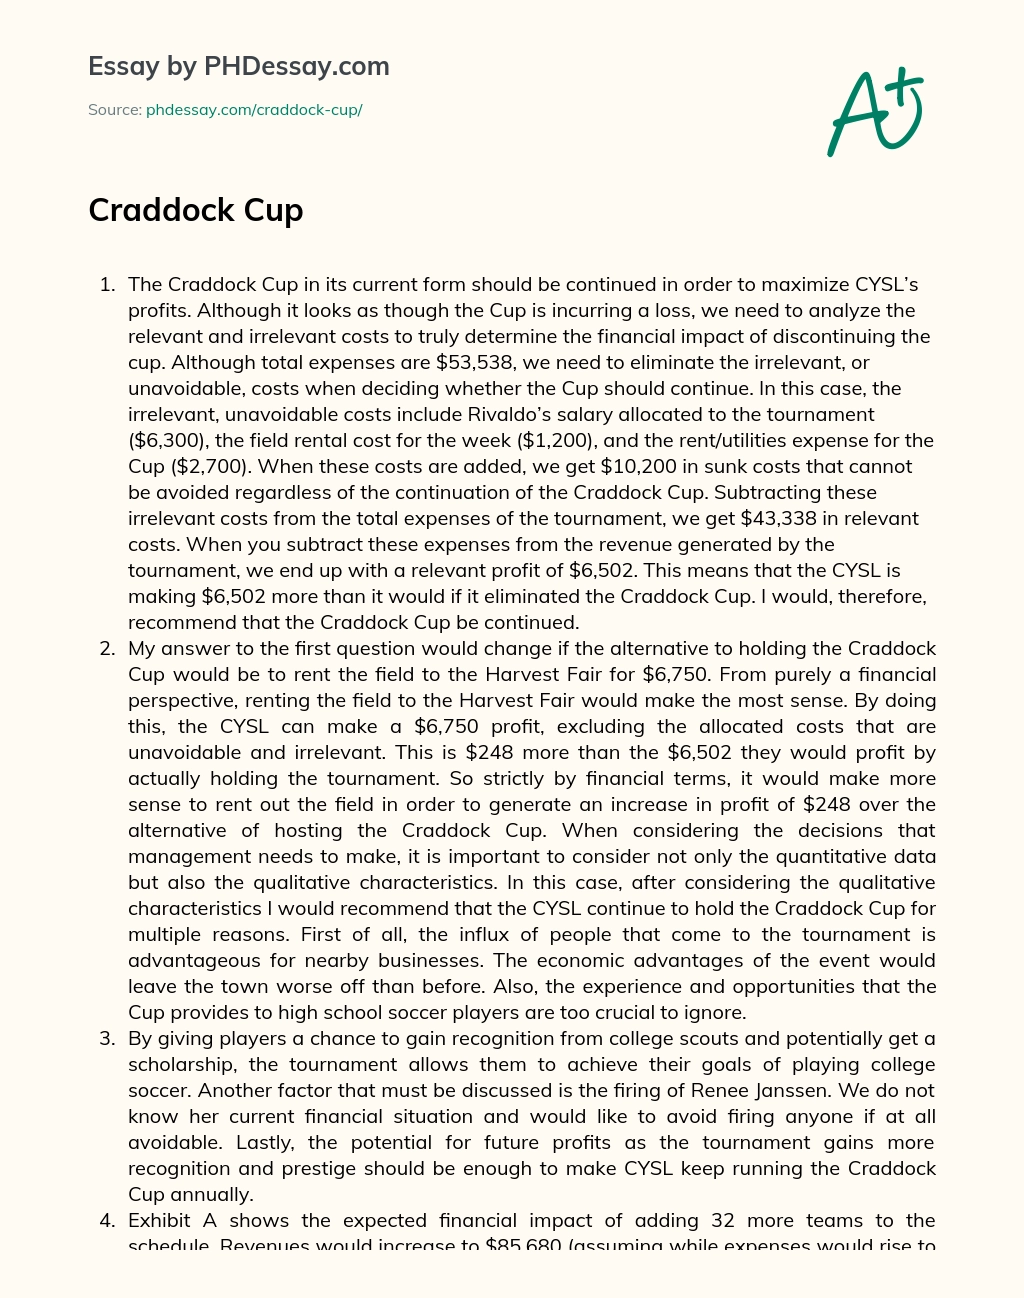 Craddock Cup essay